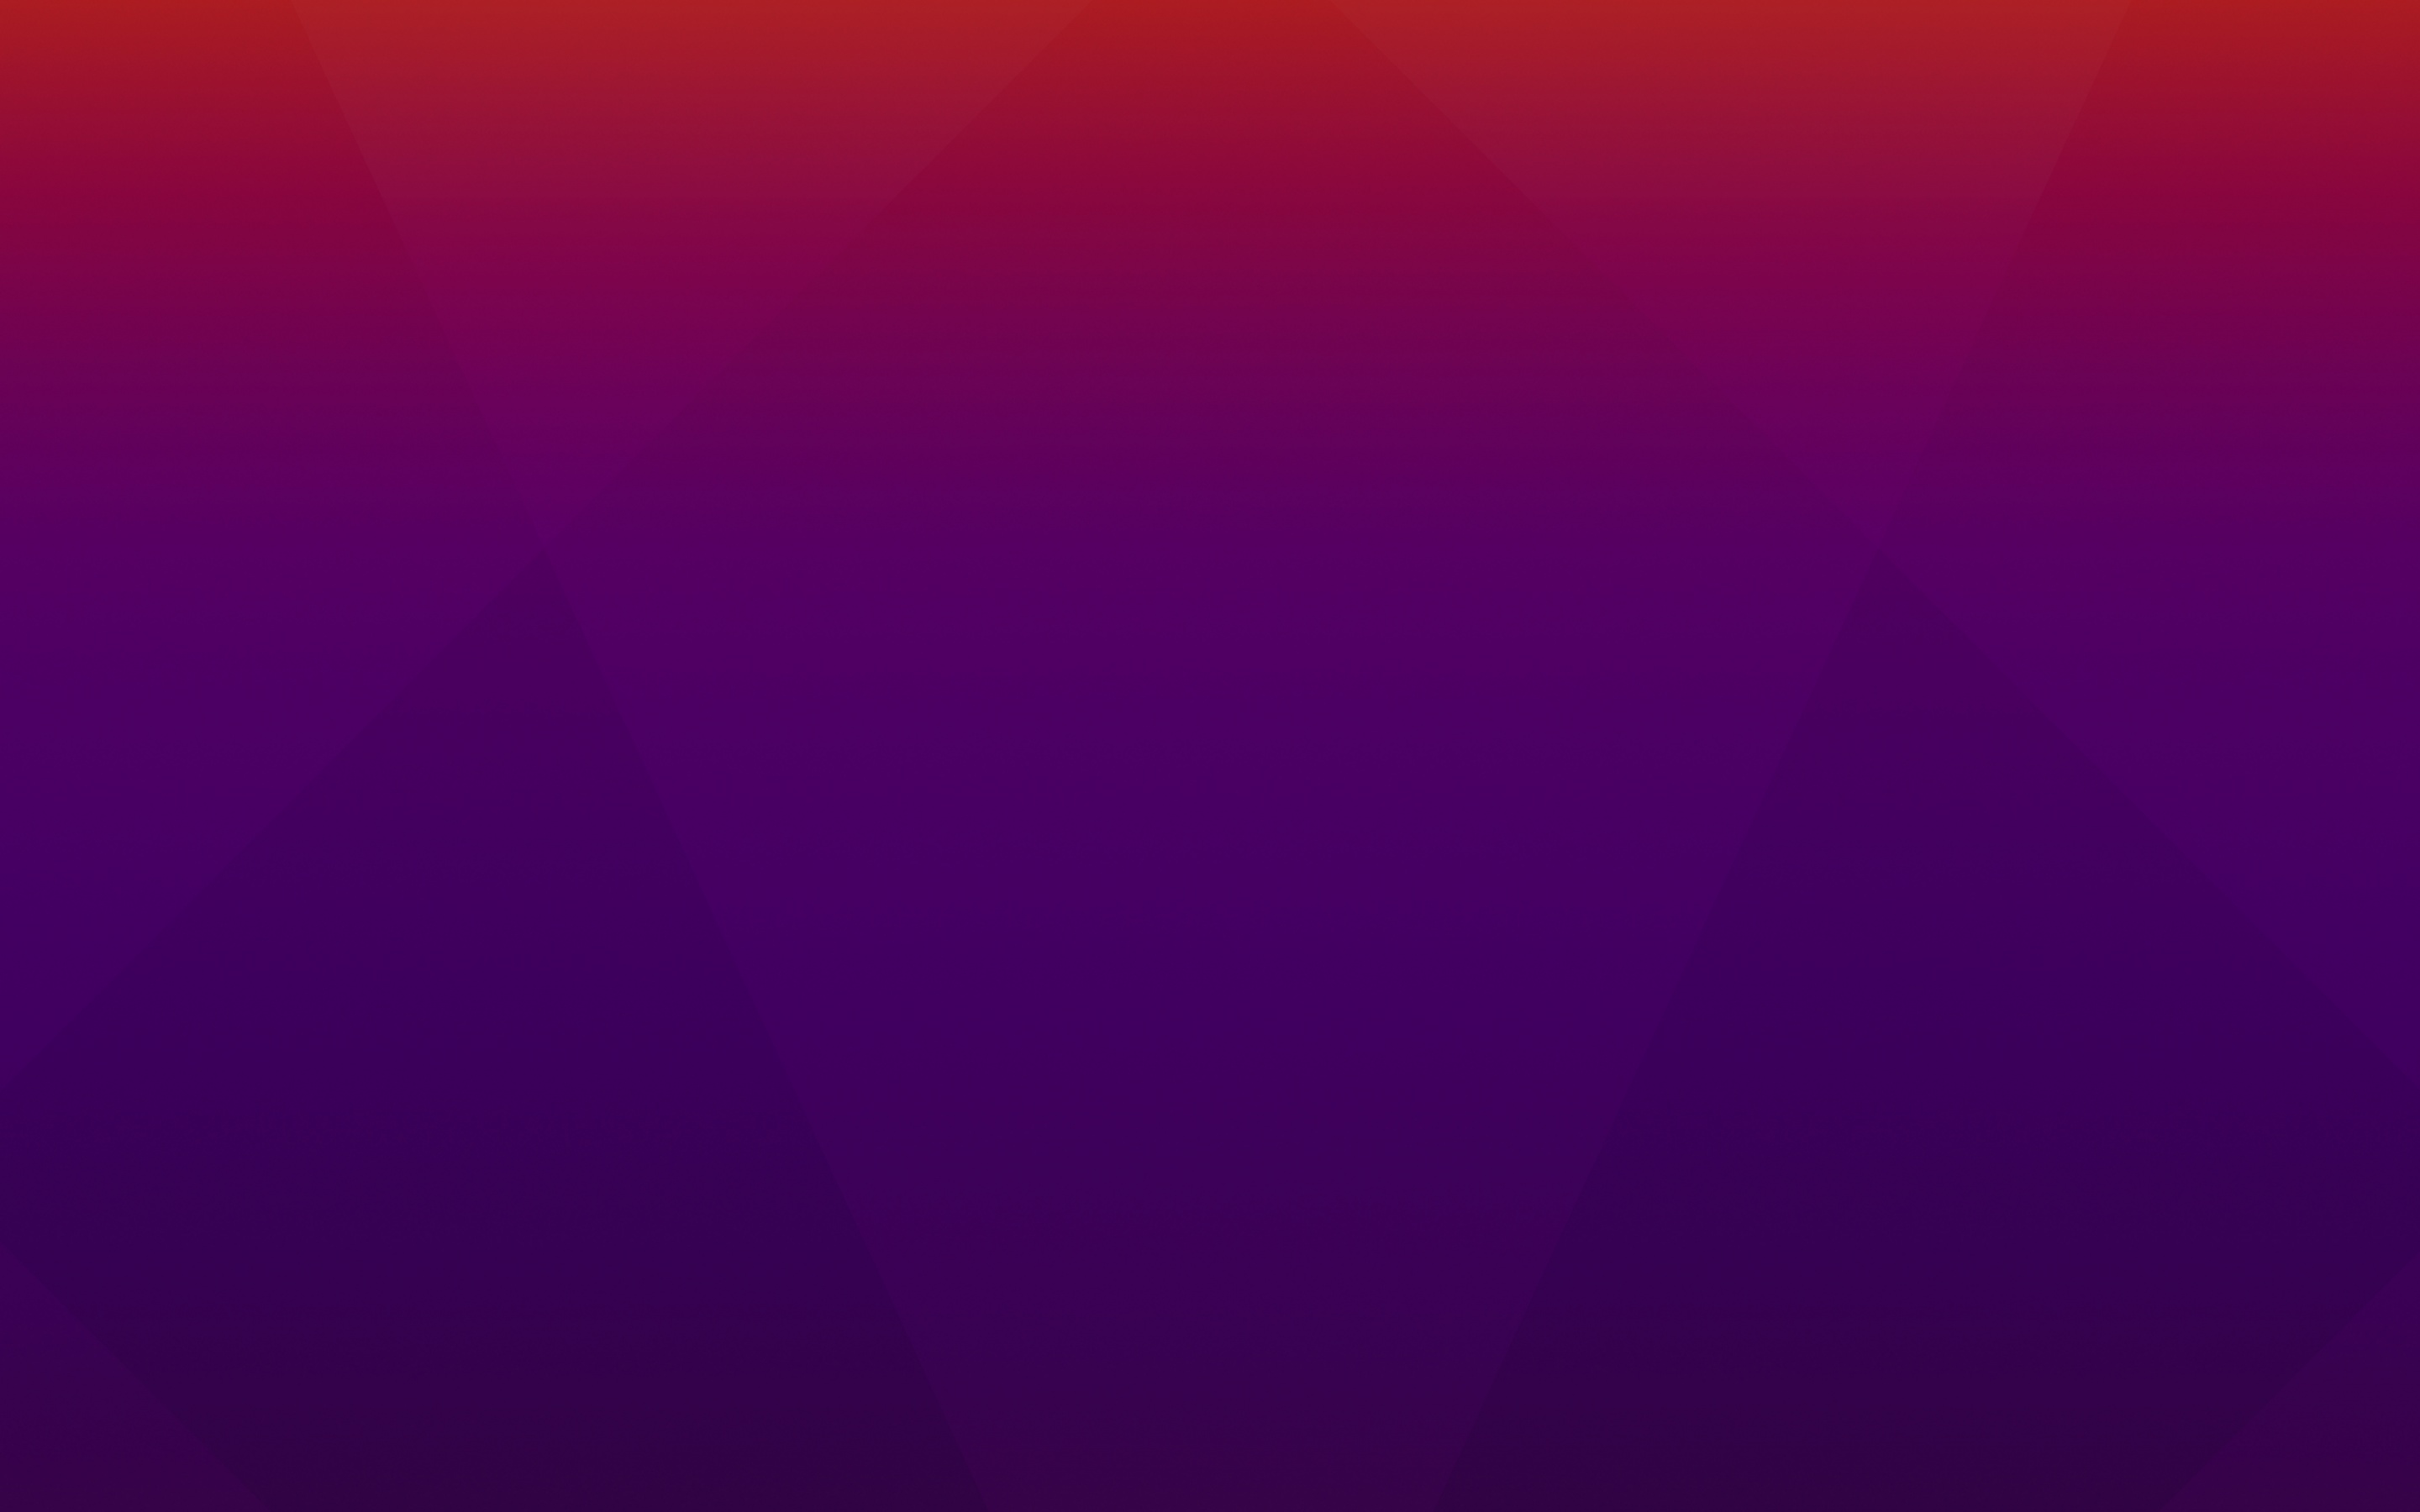 Ubuntu Mascot là biểu tượng được yêu thích của hệ điều hành Ubuntu. Một bức ảnh nền Violet background Wallpaper với Ubuntu Mascot sẽ đem lại cho bạn một không gian làm việc tràn đầy năng lượng. Hãy nhanh tay bấm vào để tìm kiếm sự phấn khích trong những bức ảnh Stock, Gradients, #